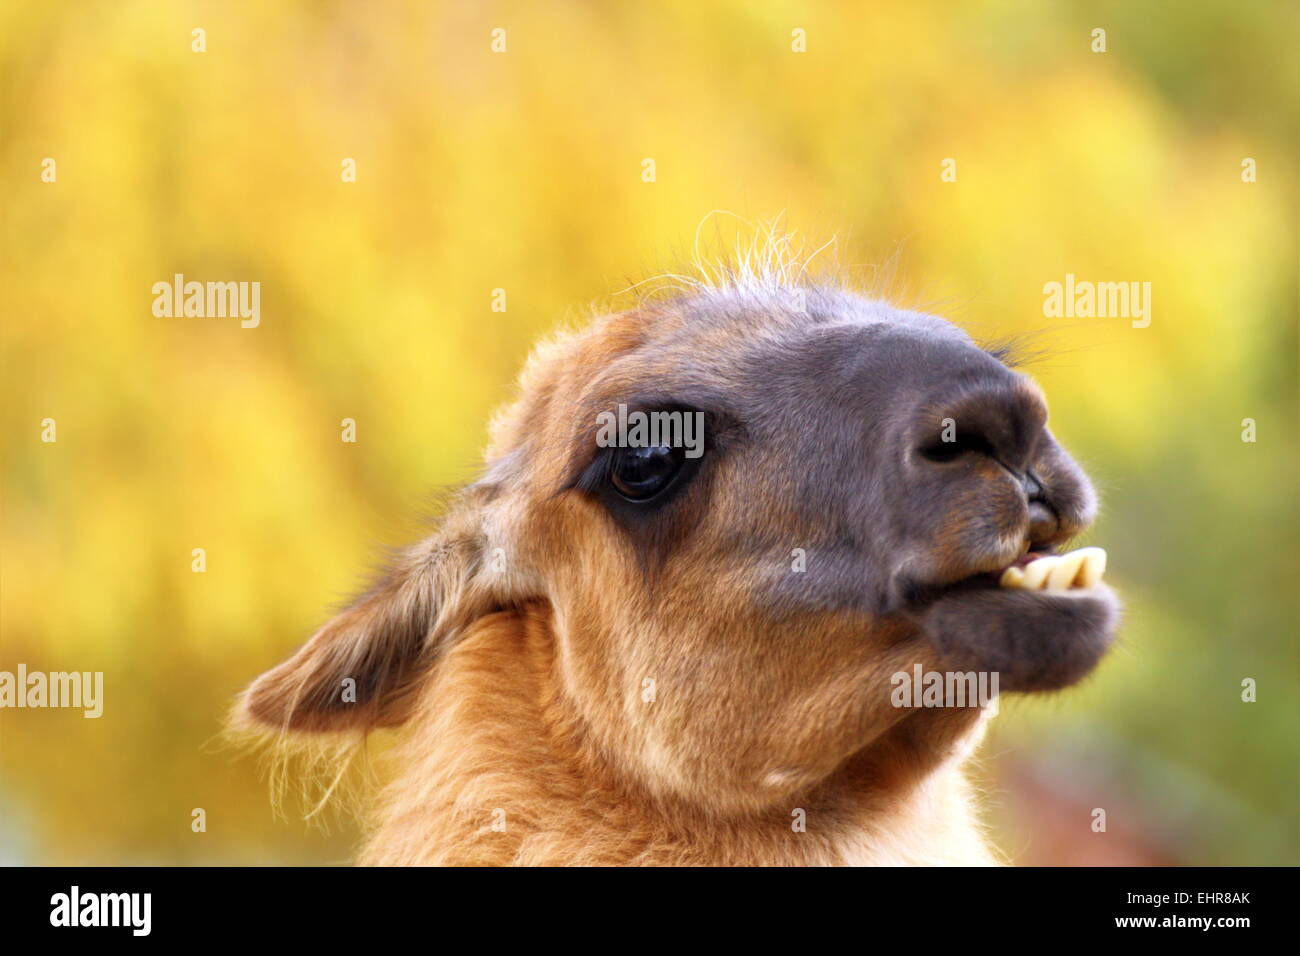 Funny lama immagini e fotografie stock ad alta risoluzione - Alamy